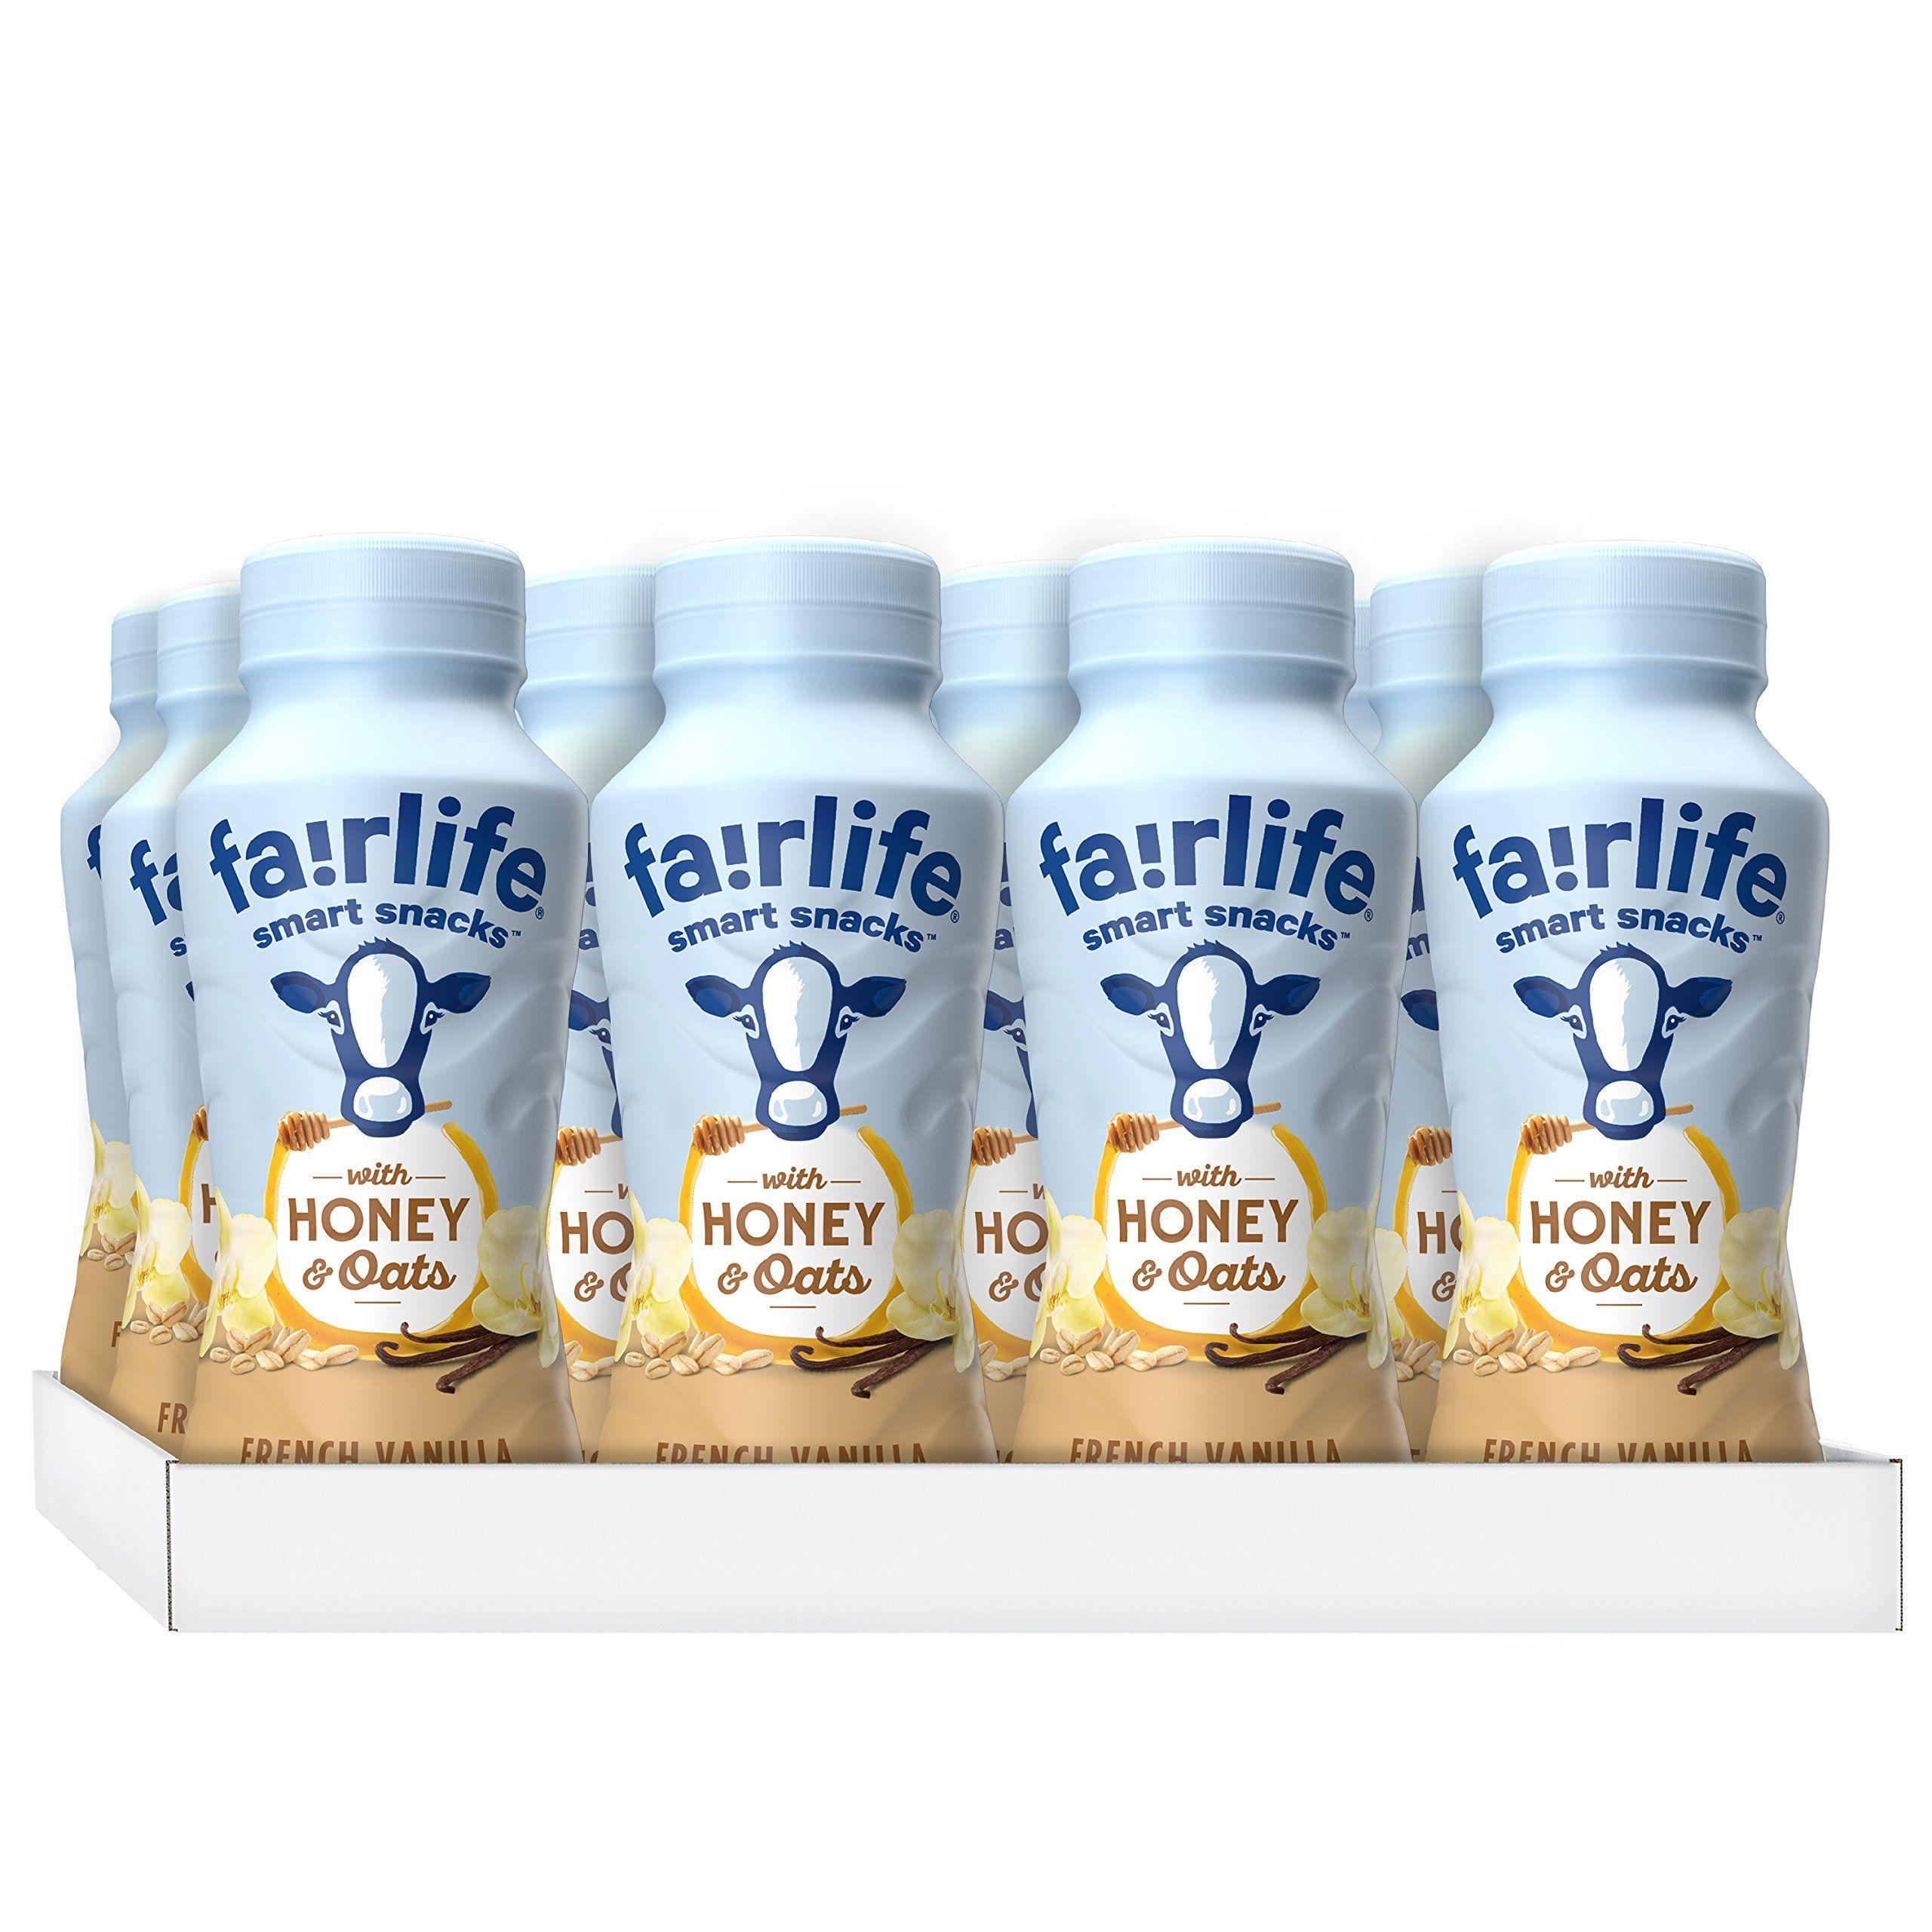 Fairlife Logo - Amazon.com: fairlife: smart snacks